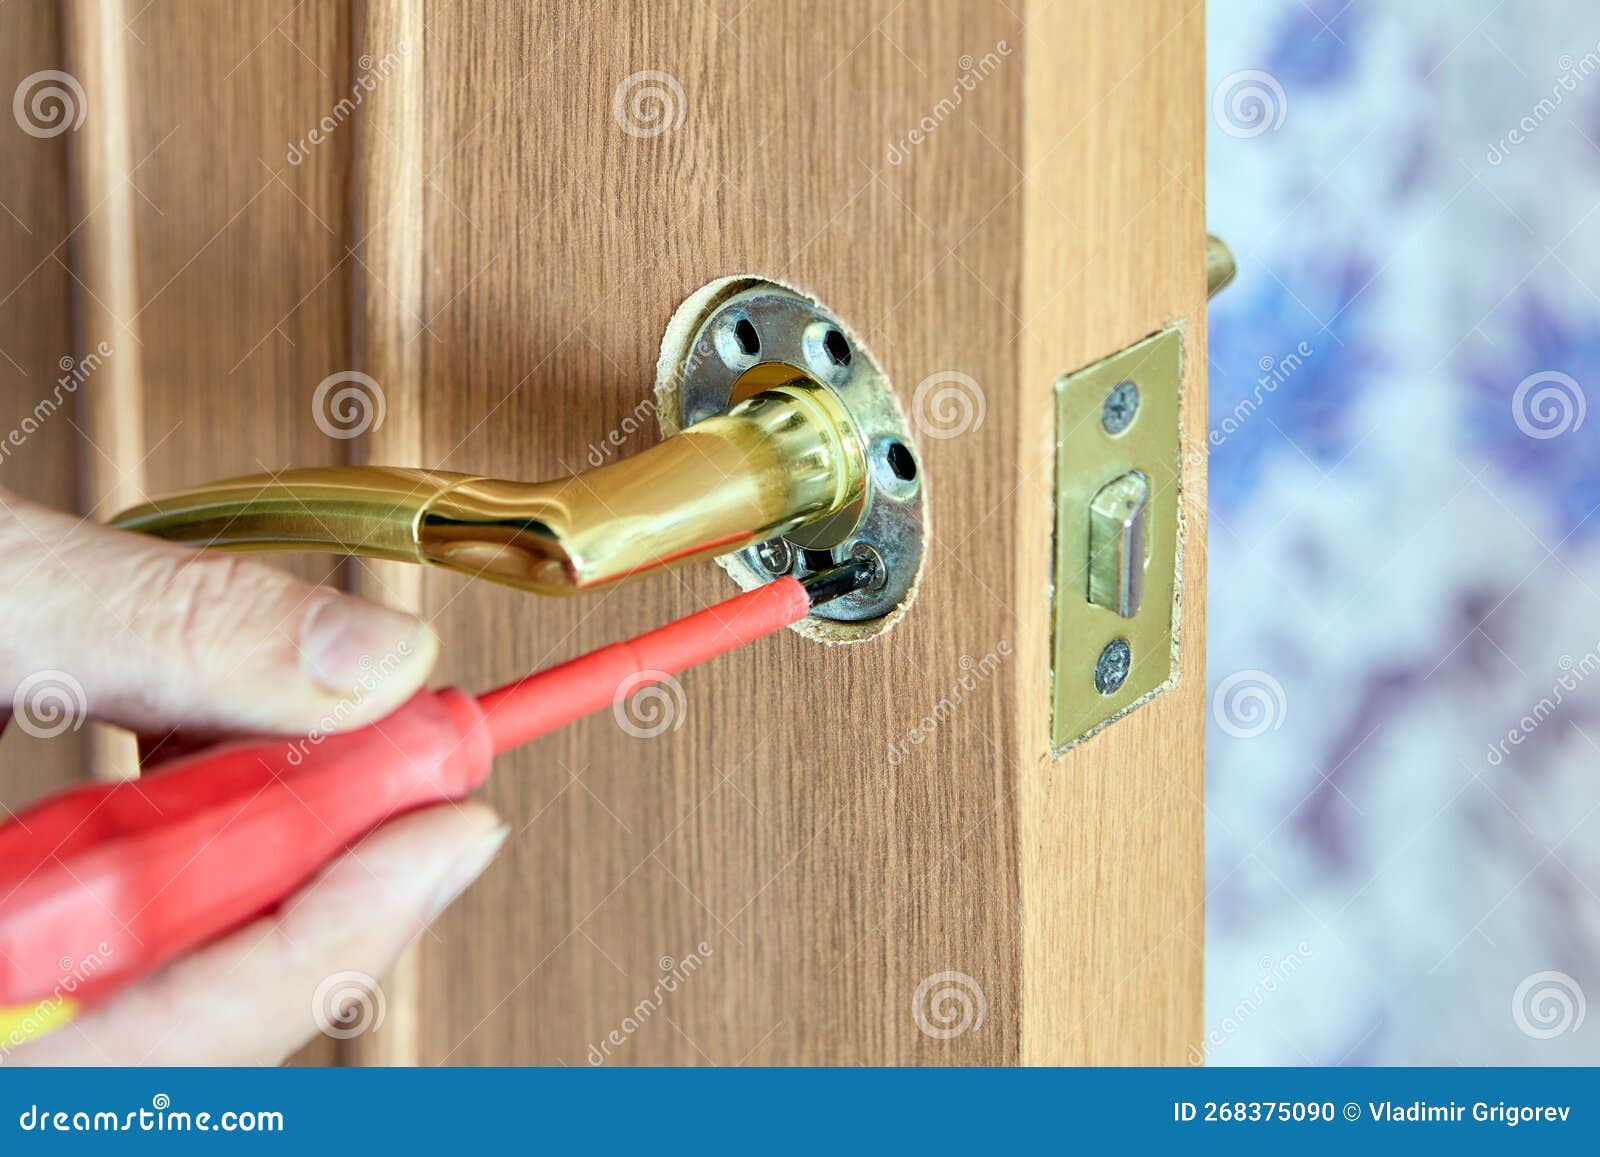 Comment réparer soi-même la poignée d'une porte ?